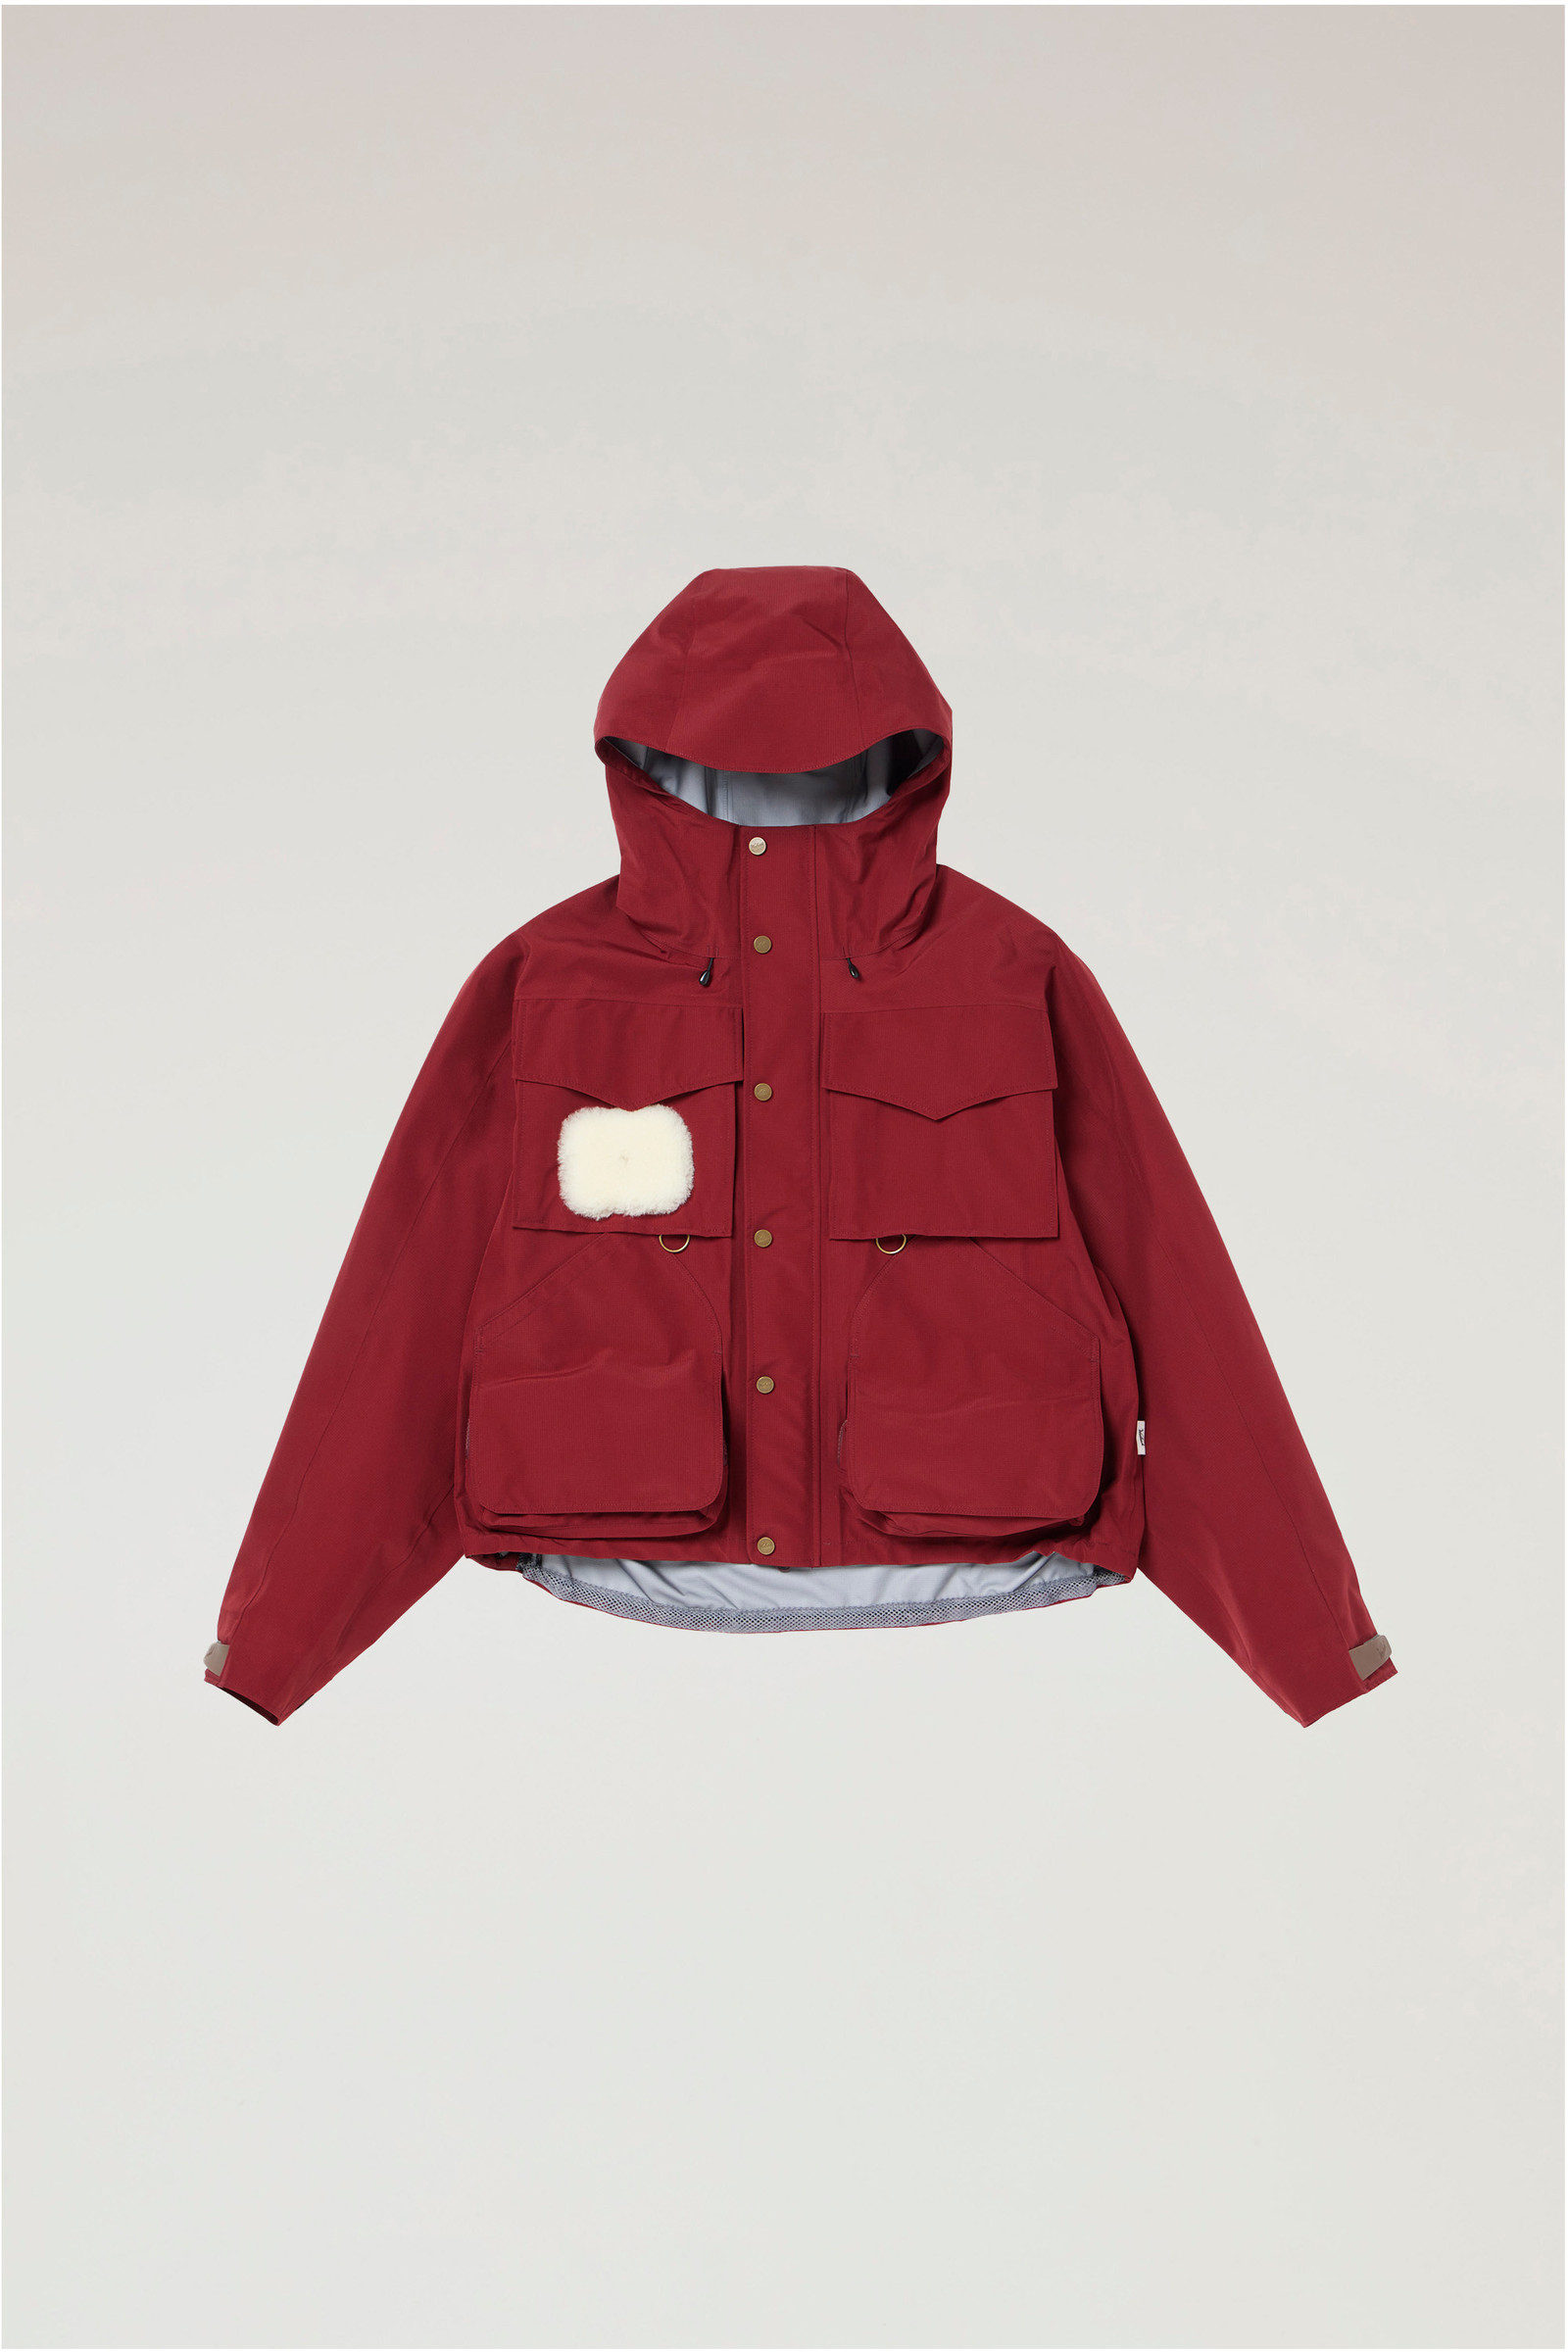 GORE-TEX Waterproof Jacket Red Woolrich UK